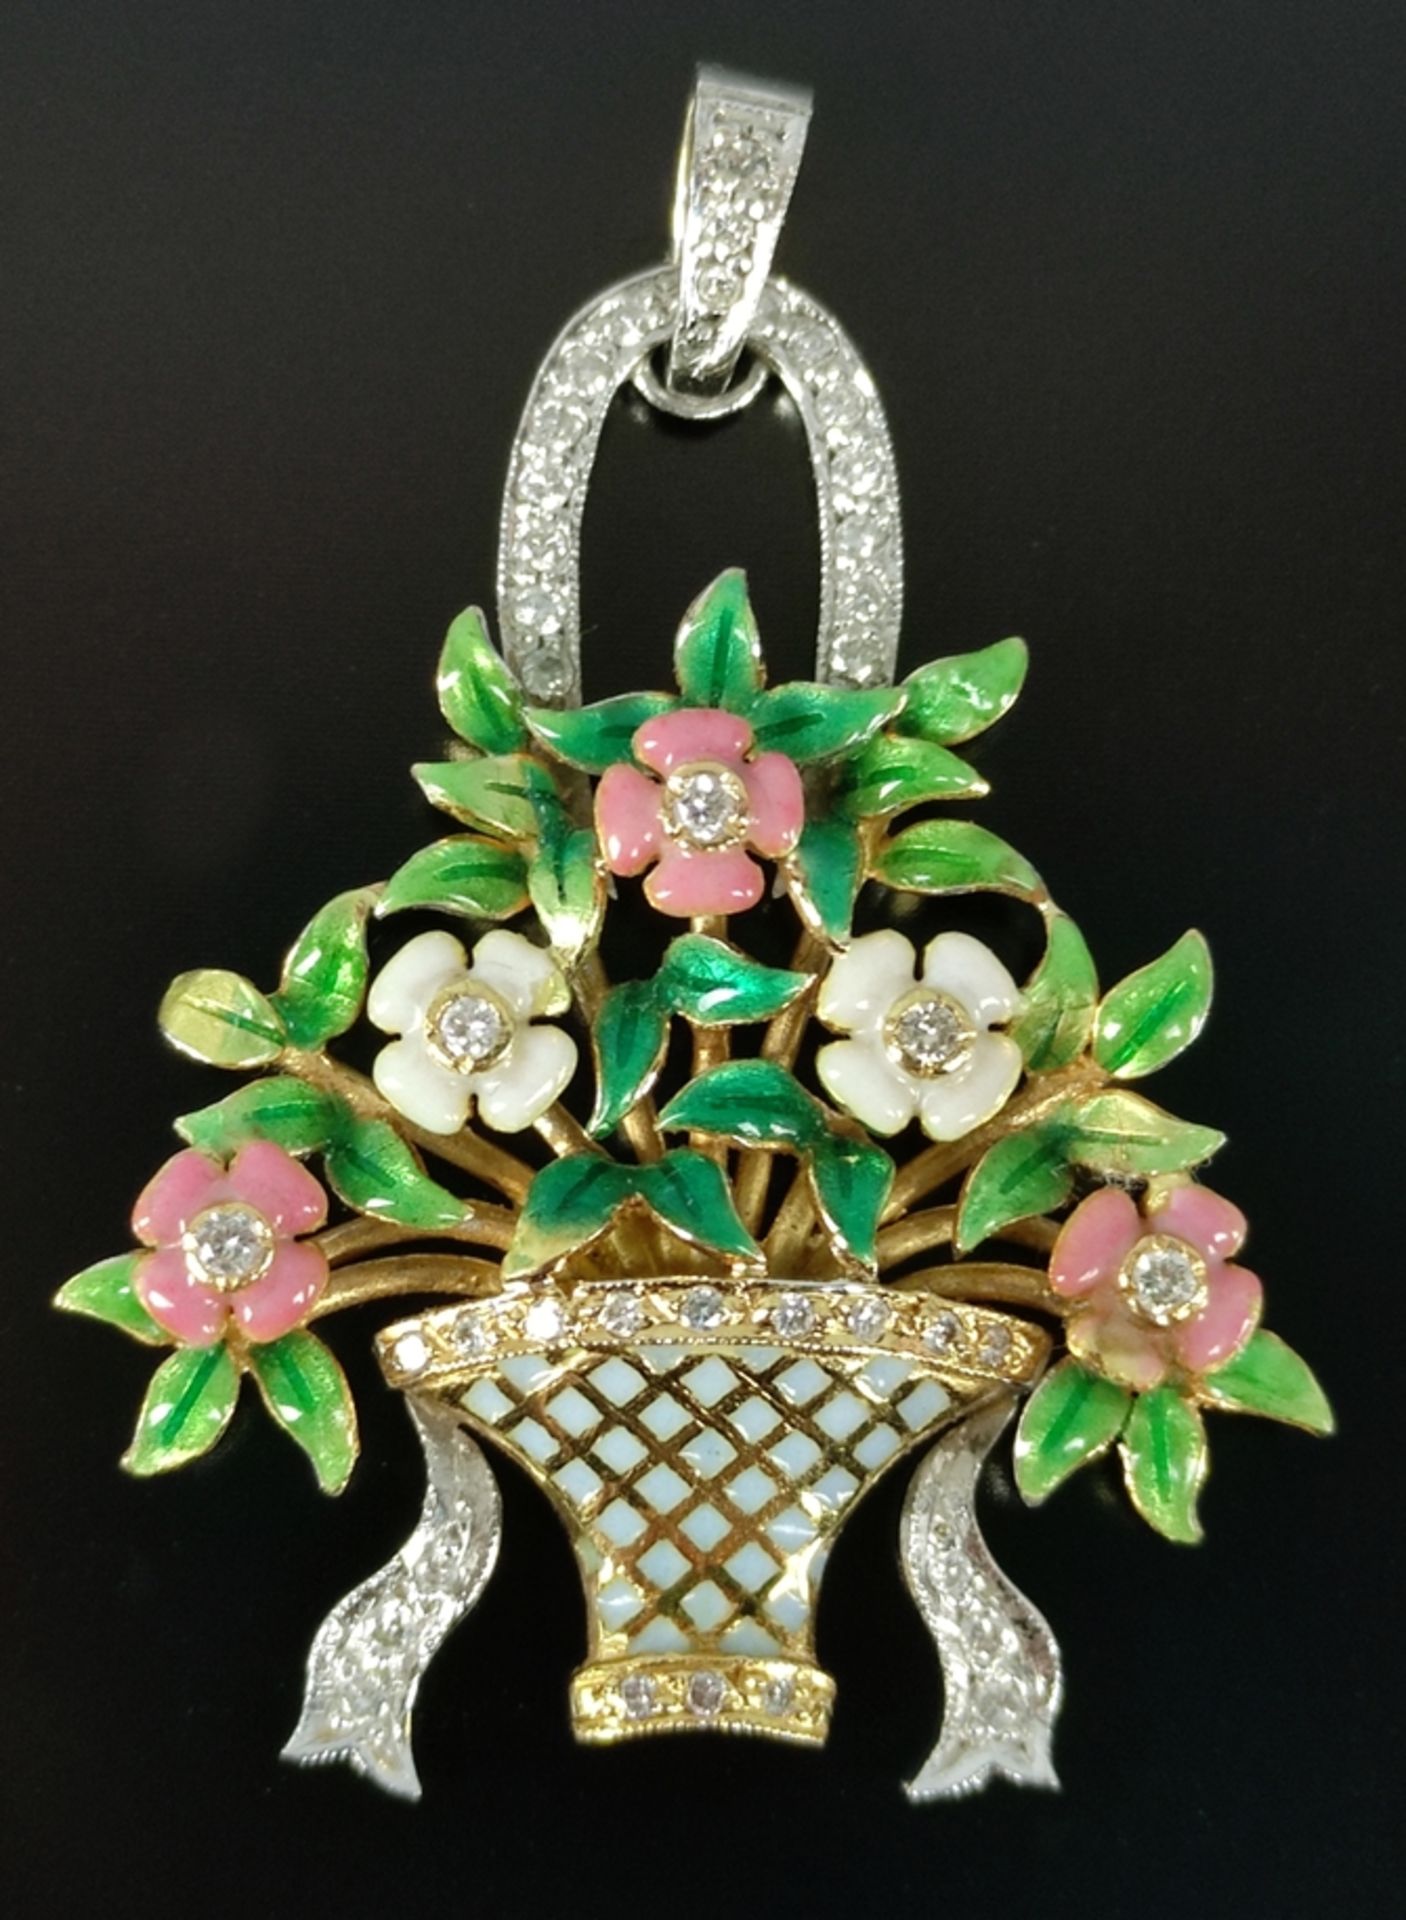 Jugendstil-Brosche als Blumenkorb mit Emaille-Blüten, fein ausgearbeitet und besetzt mit kleinen Br